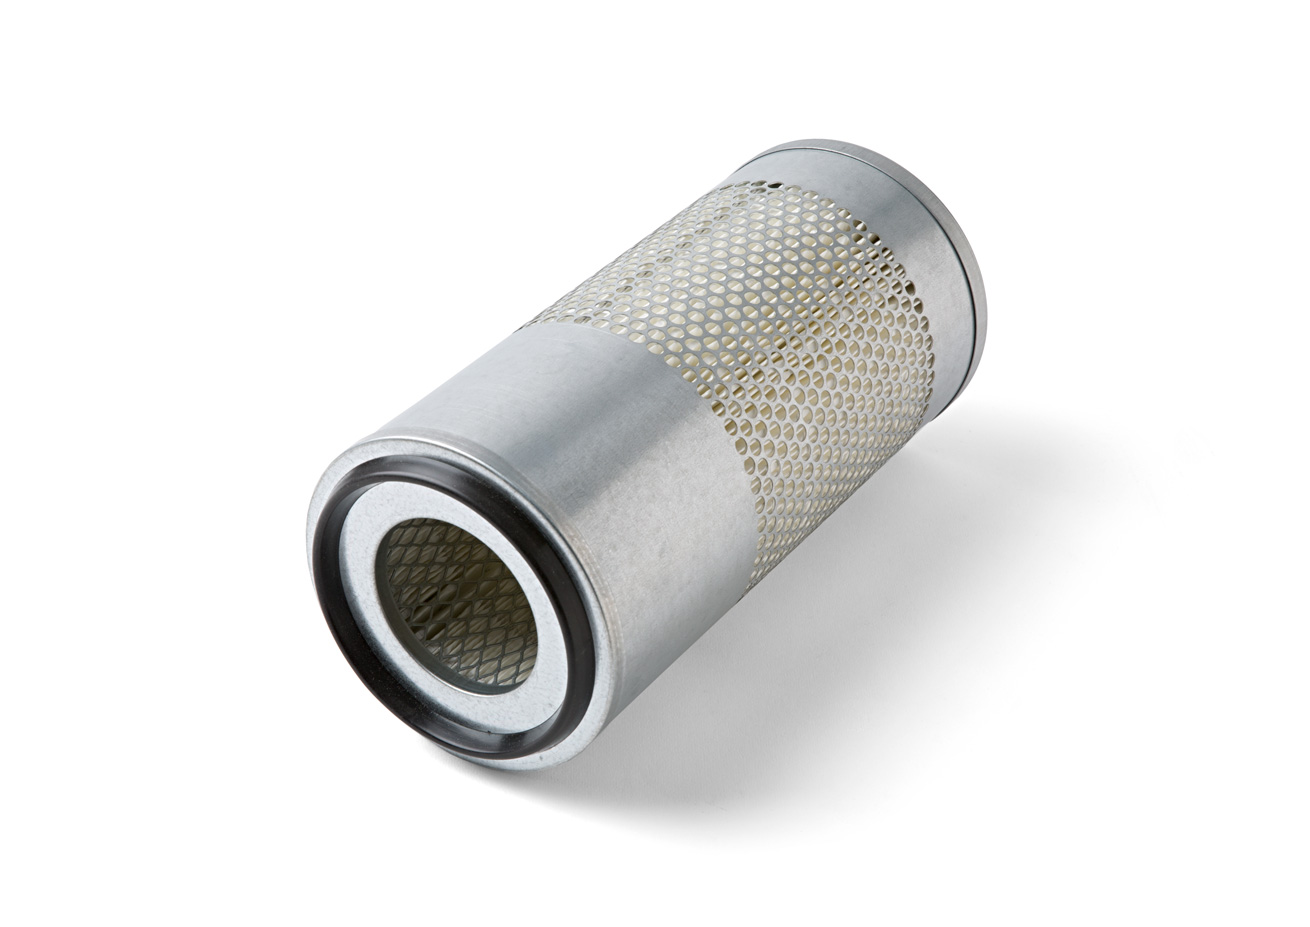 Luftfilter
Air filter
Filtre à air
Filtr powietrza
Luchtfil